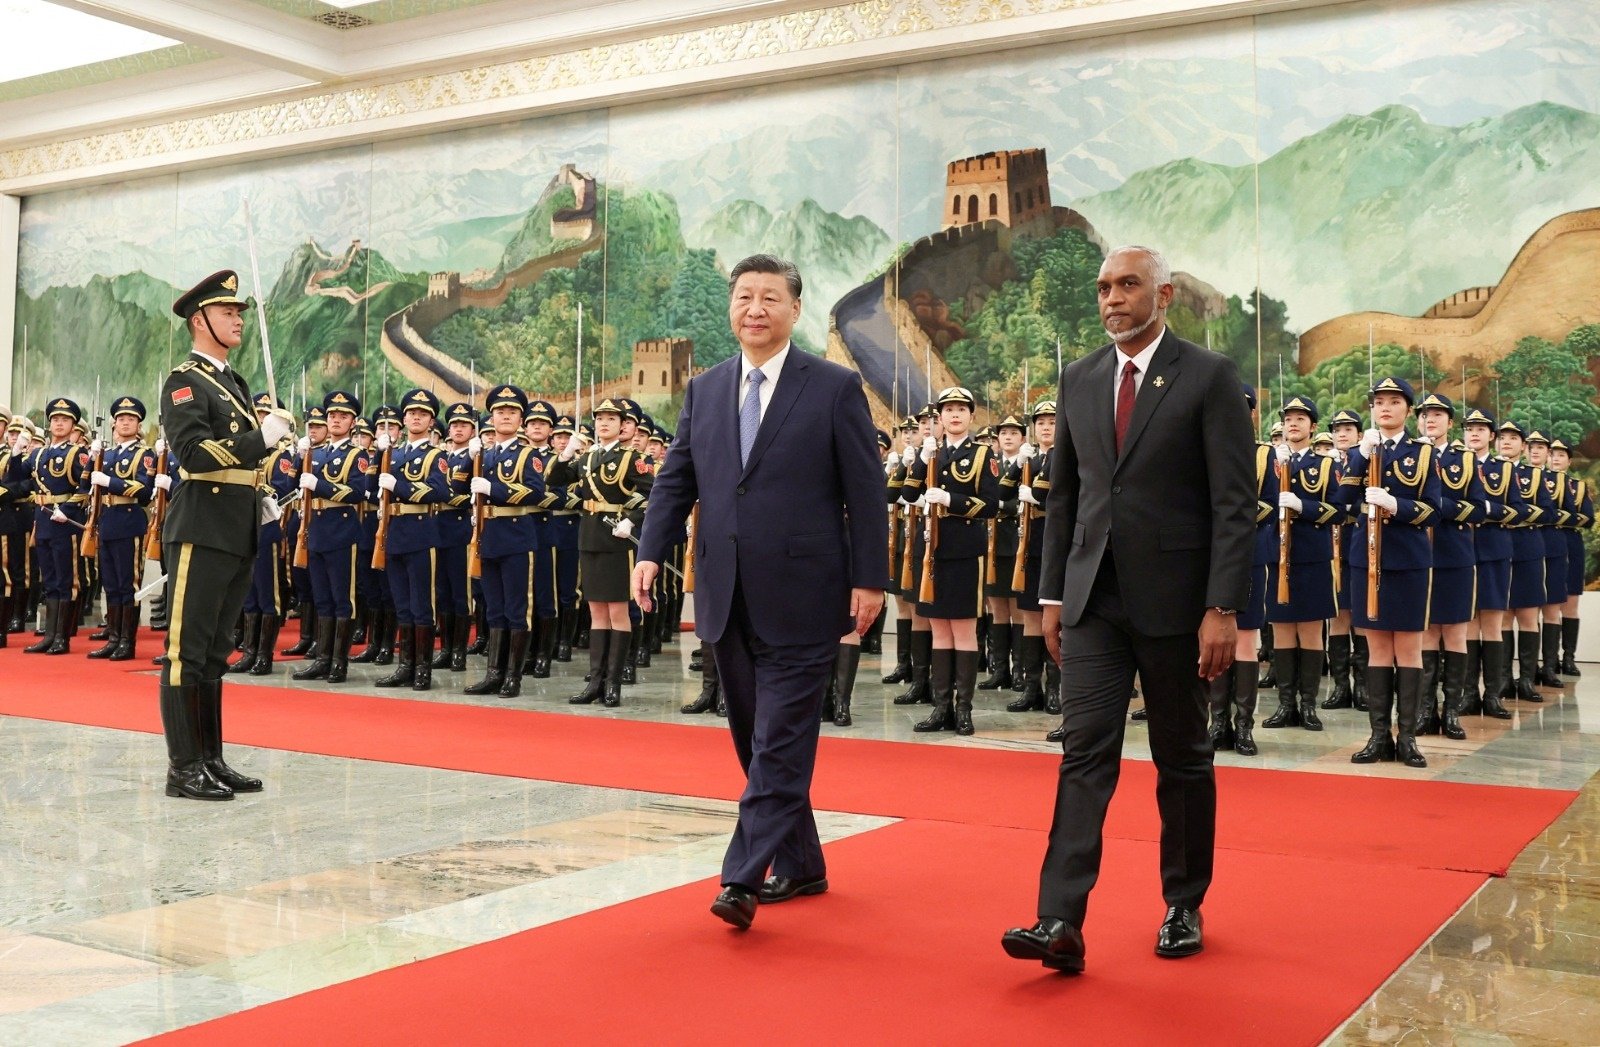 1月10日，中国国家主席习近平在北京人民大会堂为国事访问的马尔代夫总统穆伊兹举行欢迎仪式。（图取自中新社/路透社档案照）